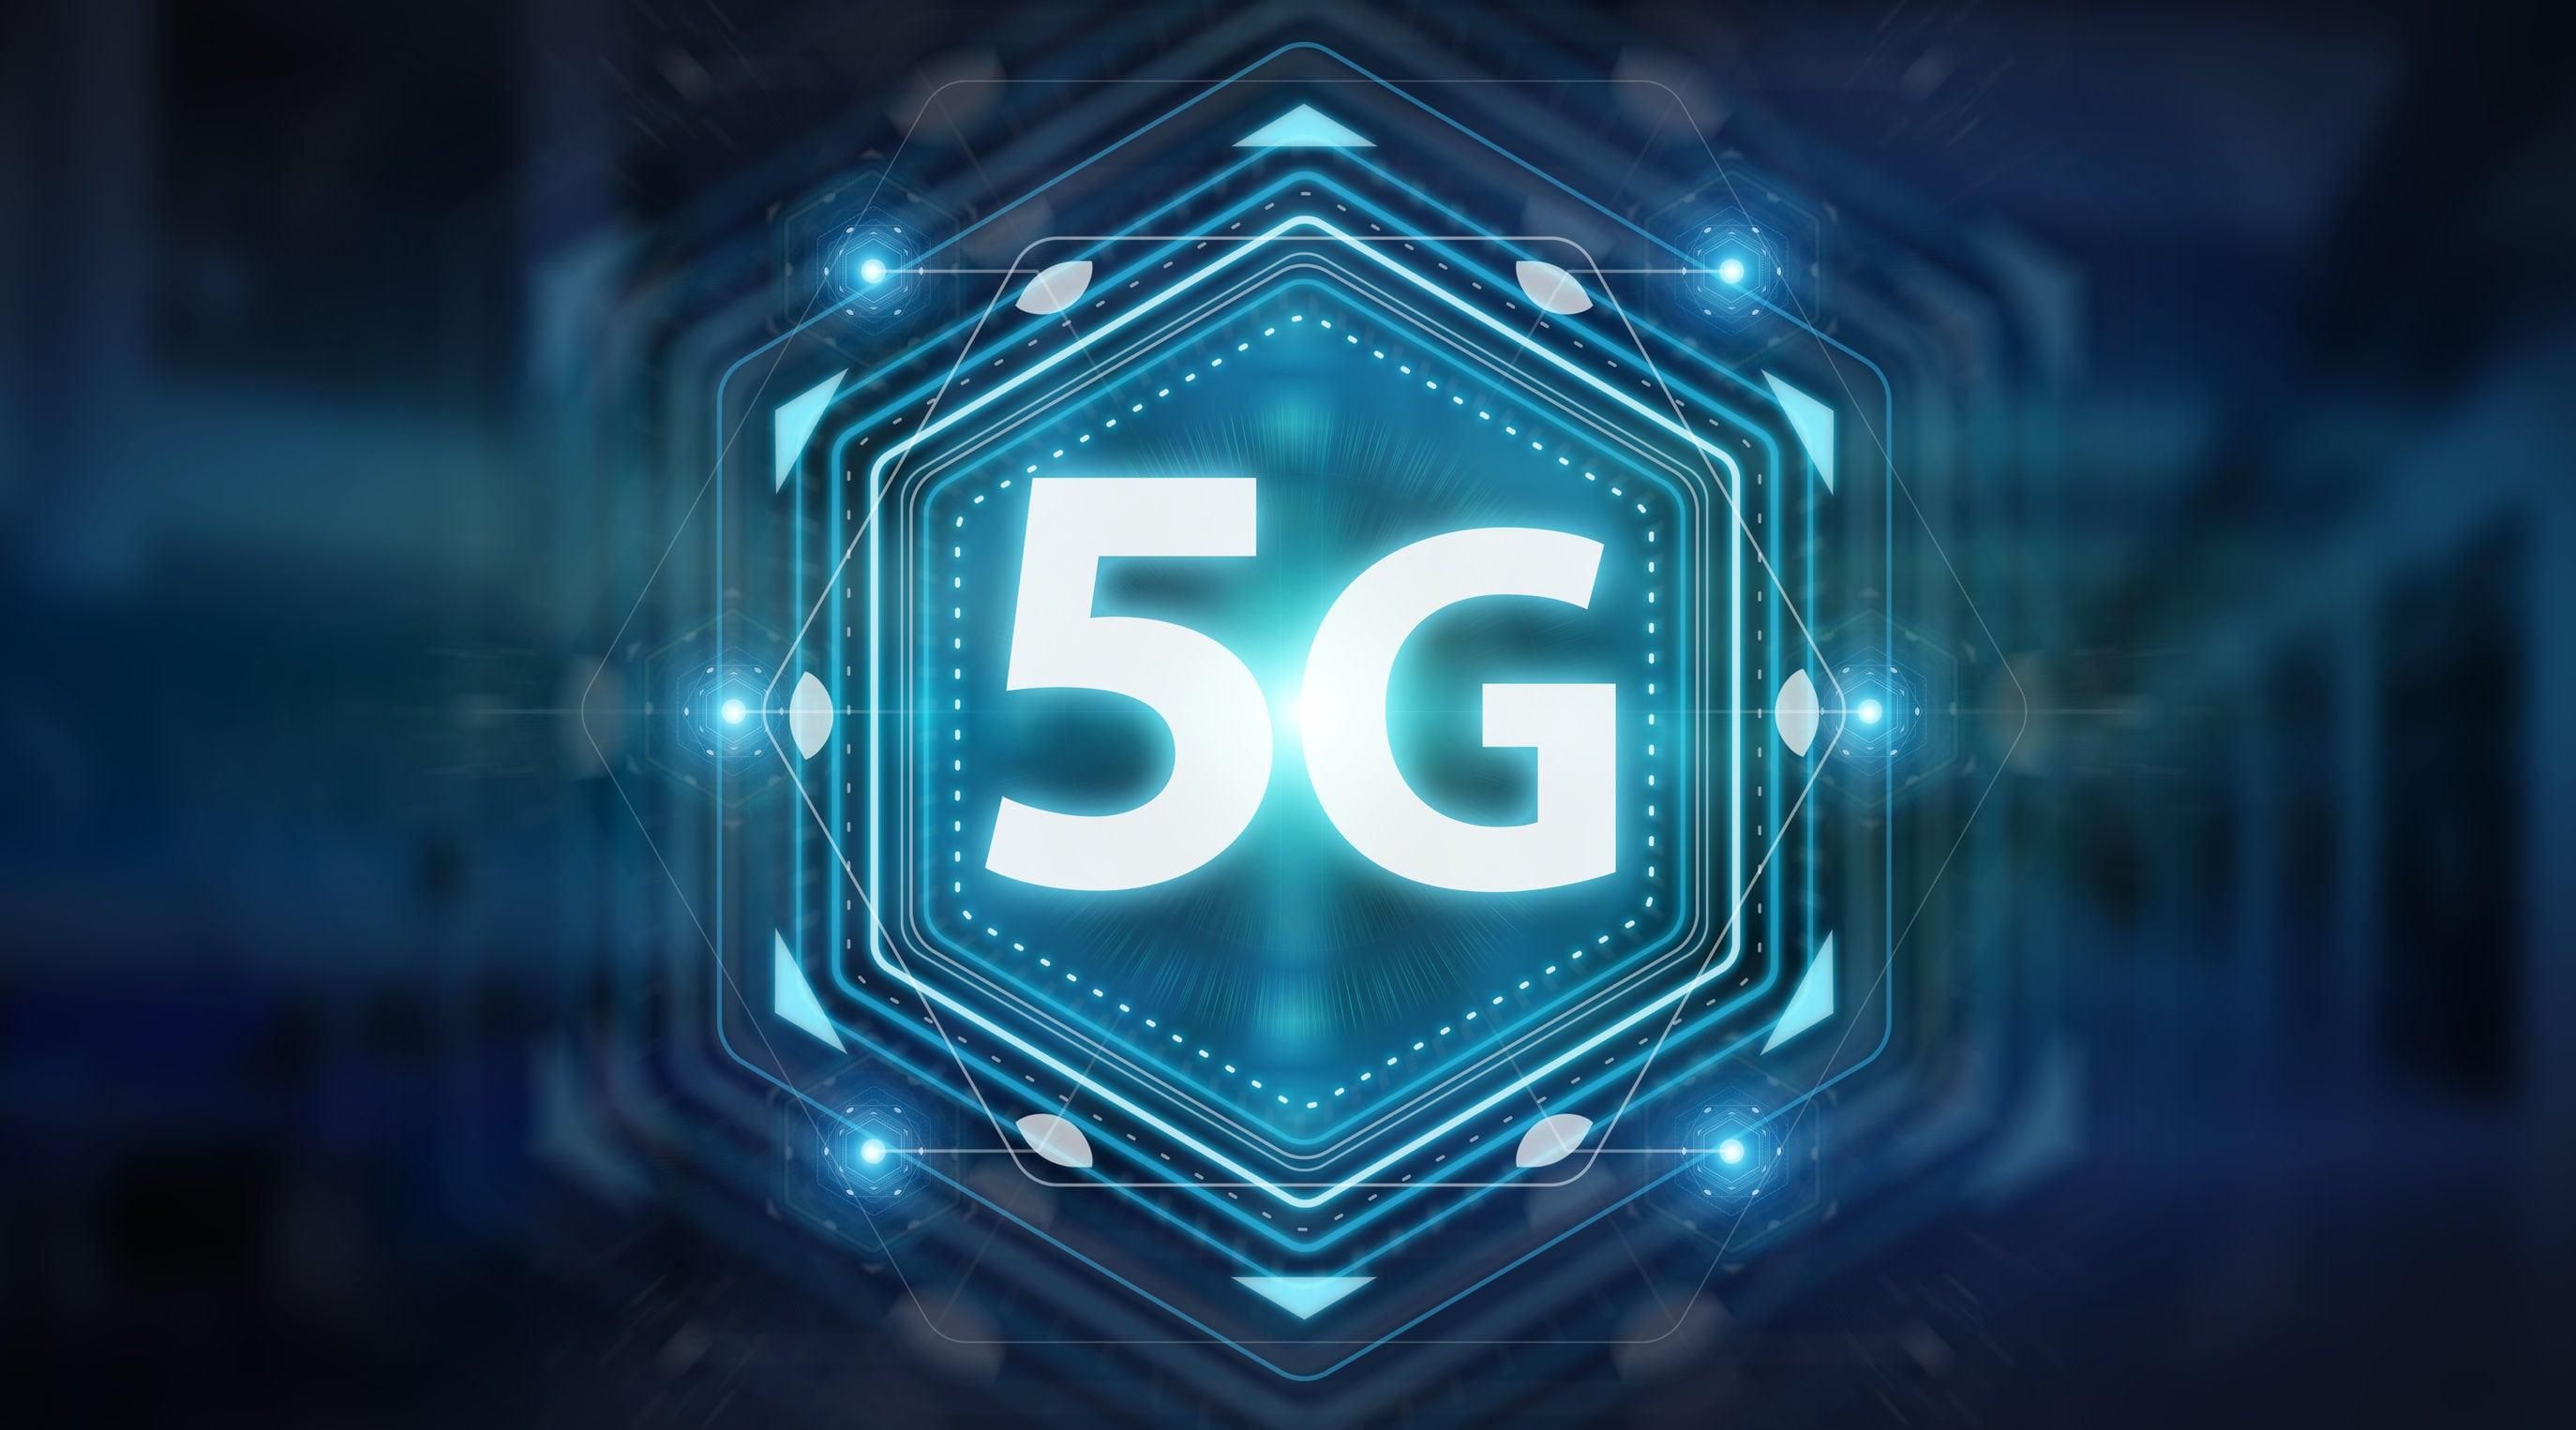 Huawei заявила о прорыве в разработке антенн для 5G